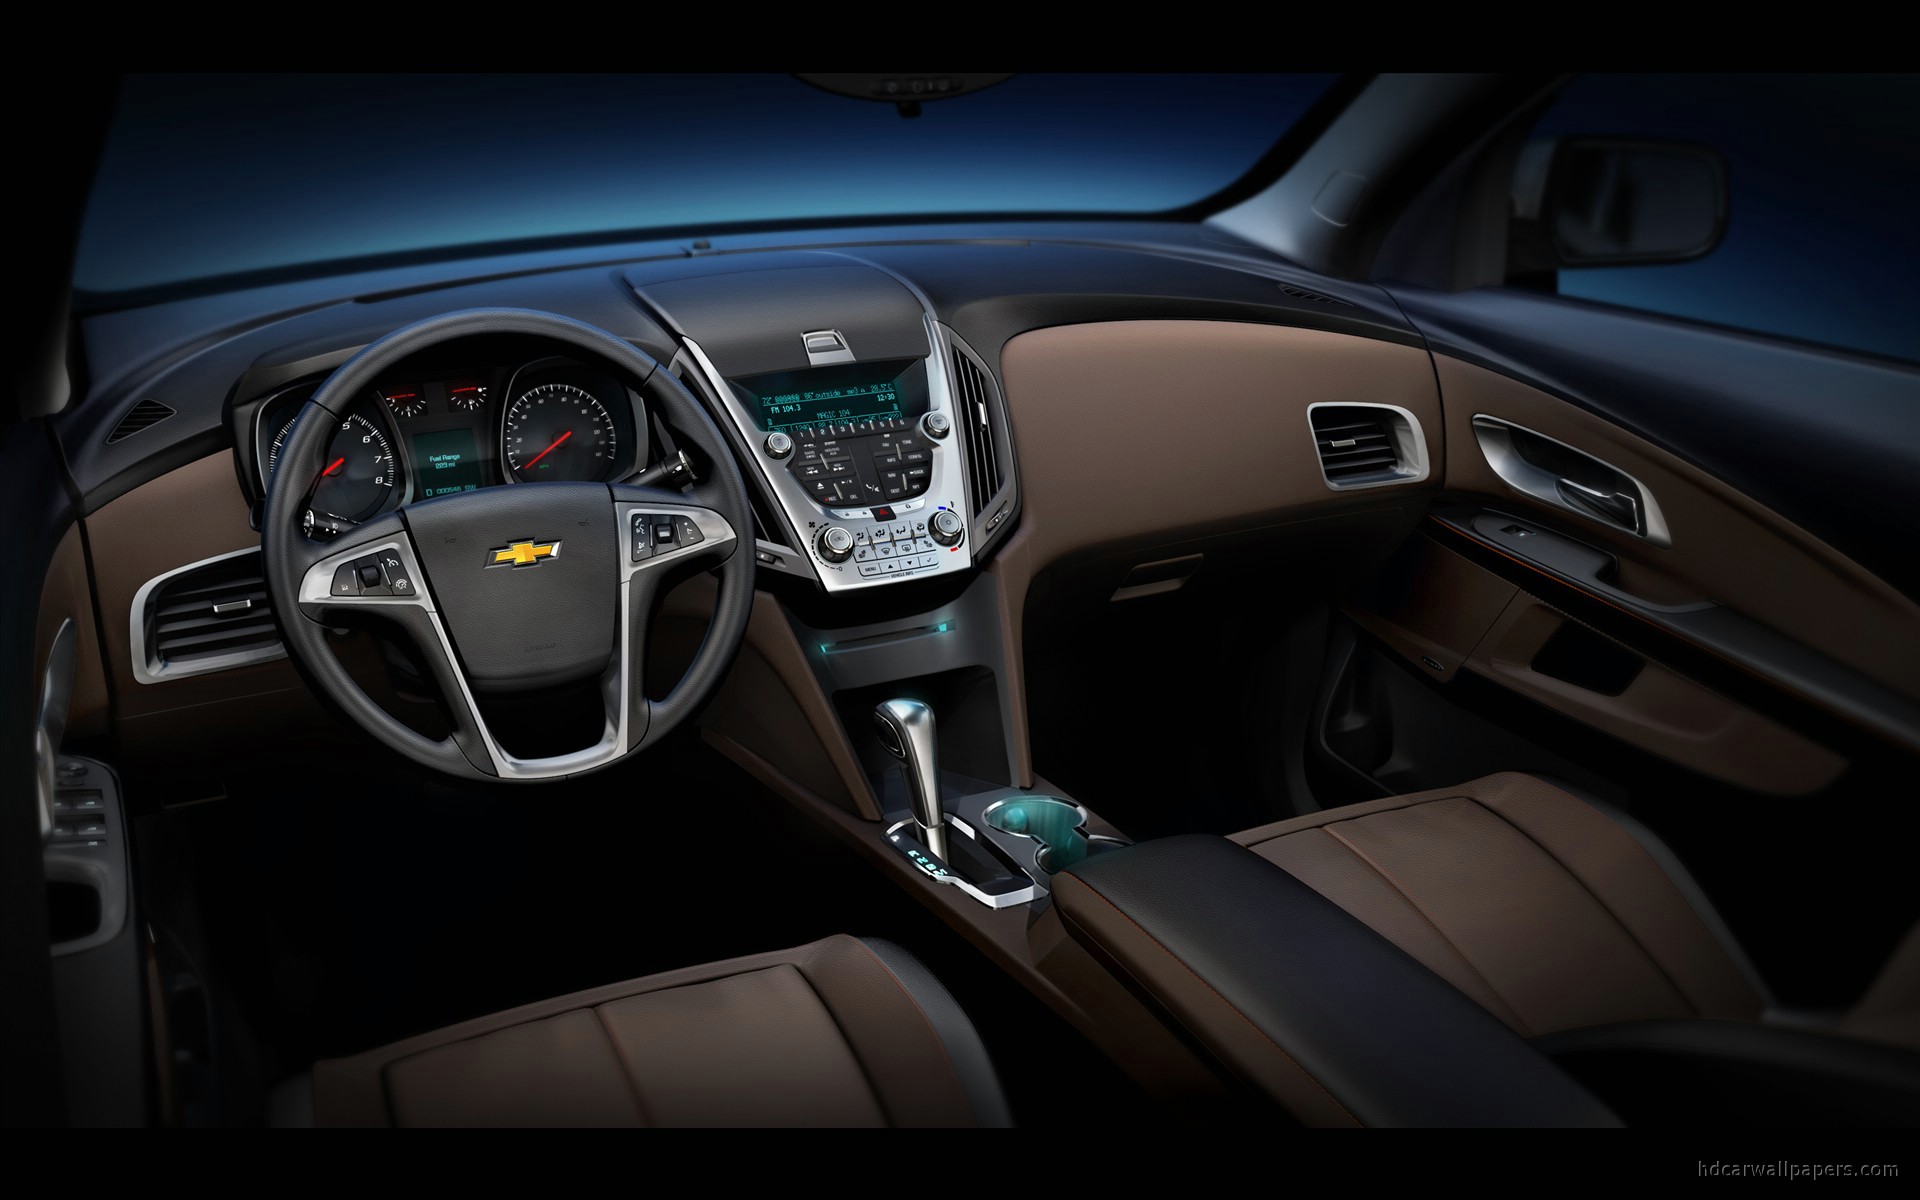 2010 Chevrolet Equinox Interior Wallpaper Hd Car